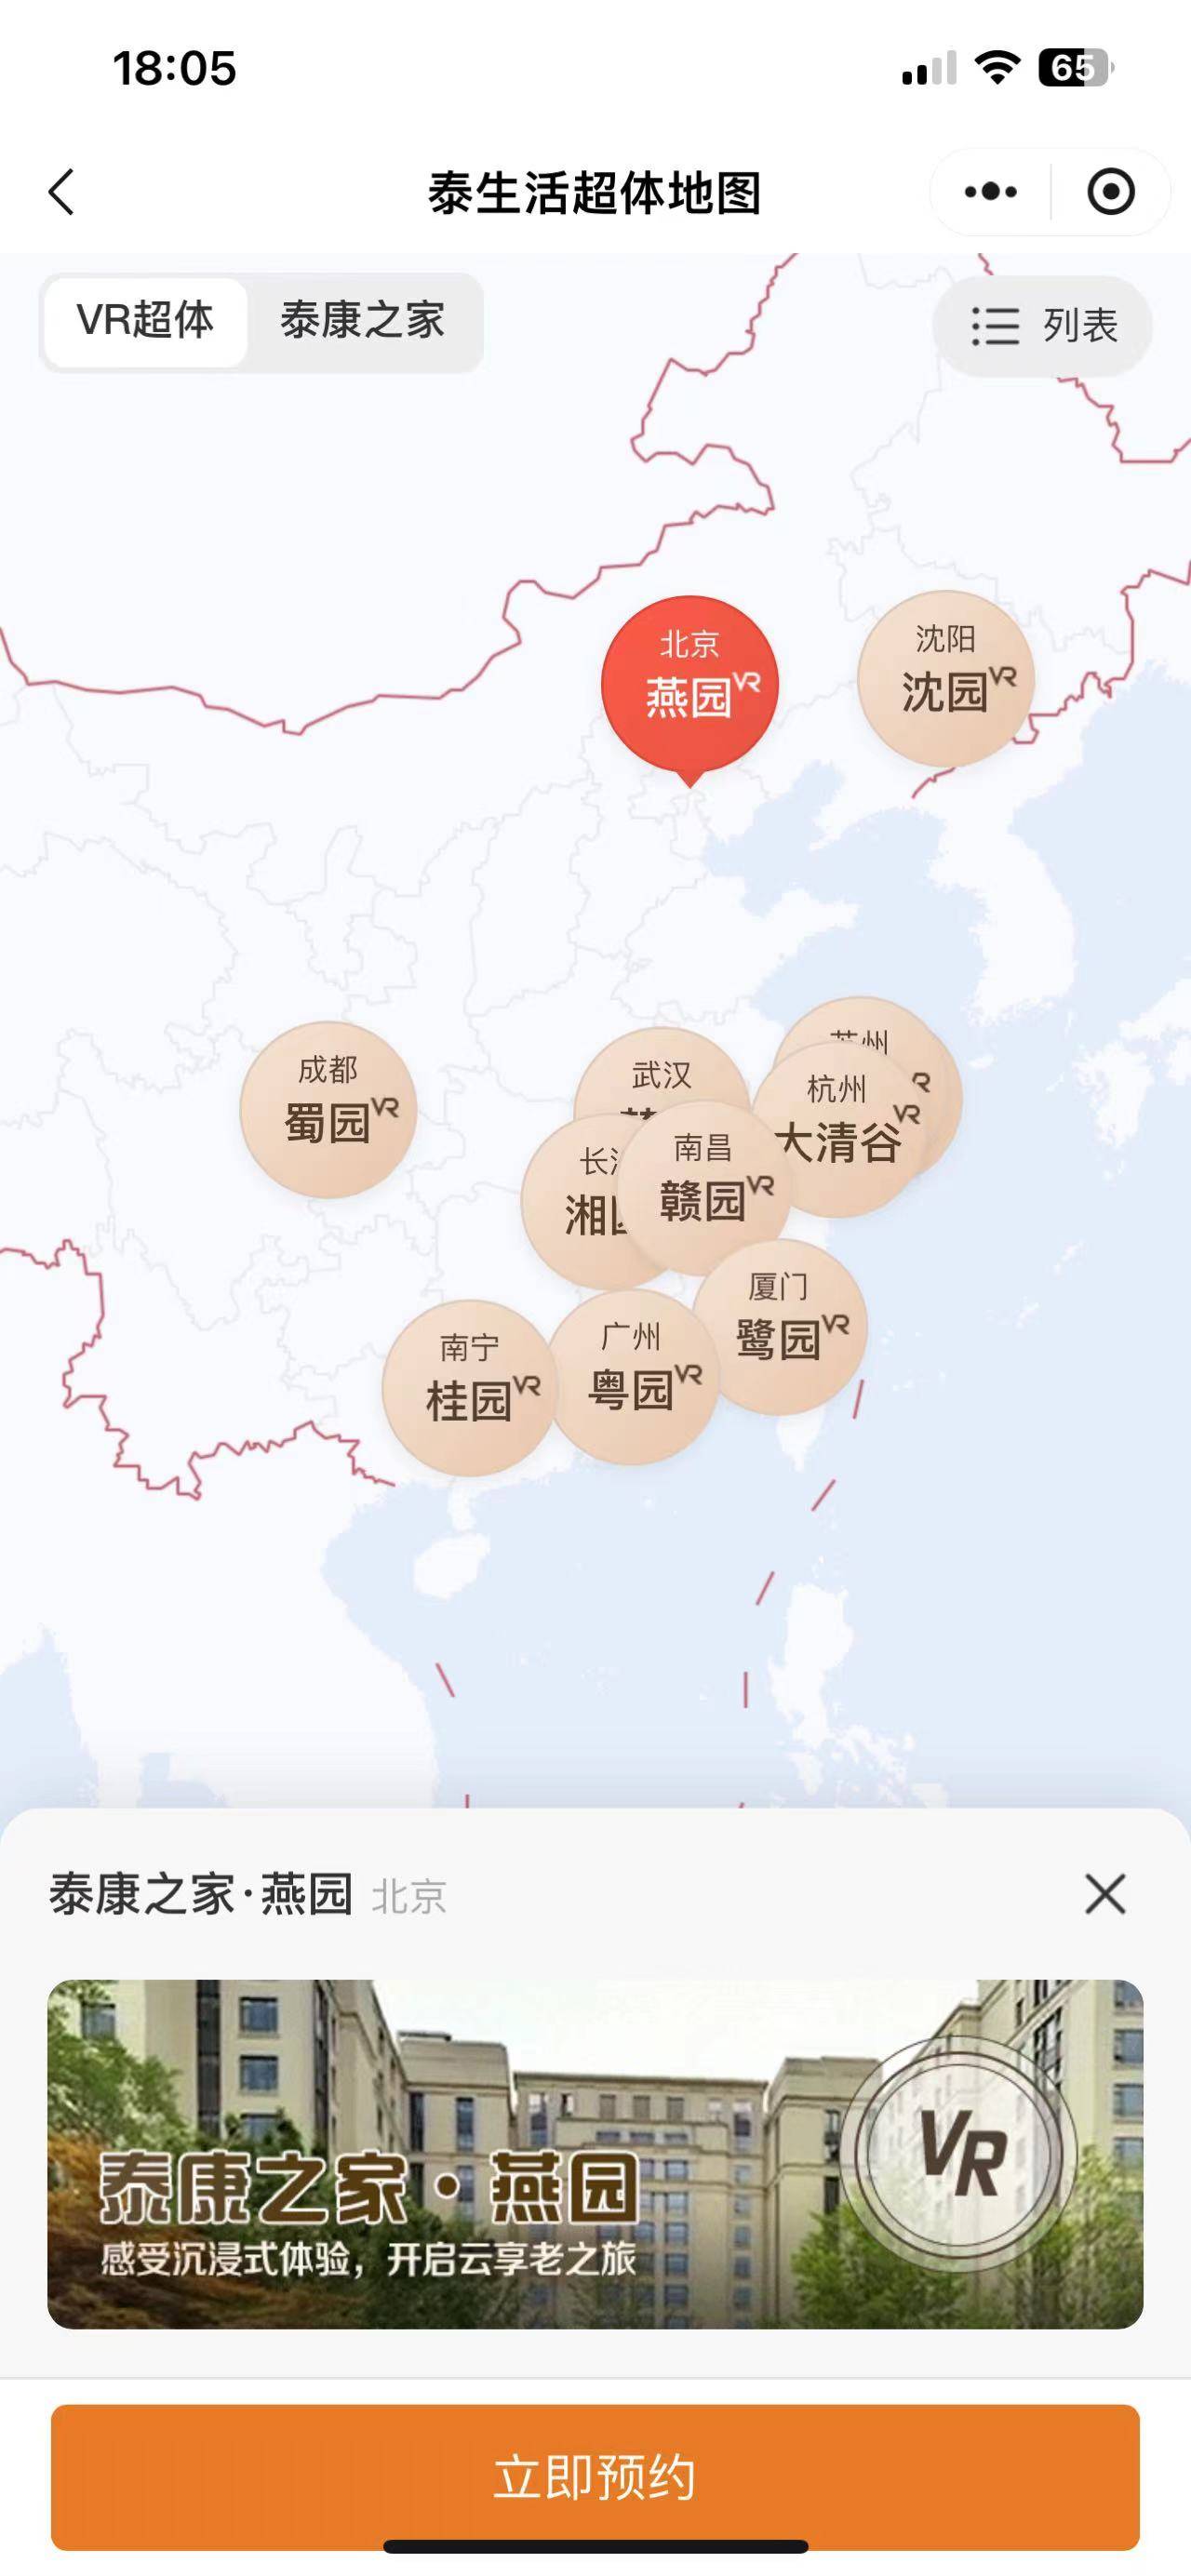 中国国际电视台🌸新澳门一肖一码精准资料公开🌸|上海市互联网业联合会网络和数据安全委员会成立  第2张